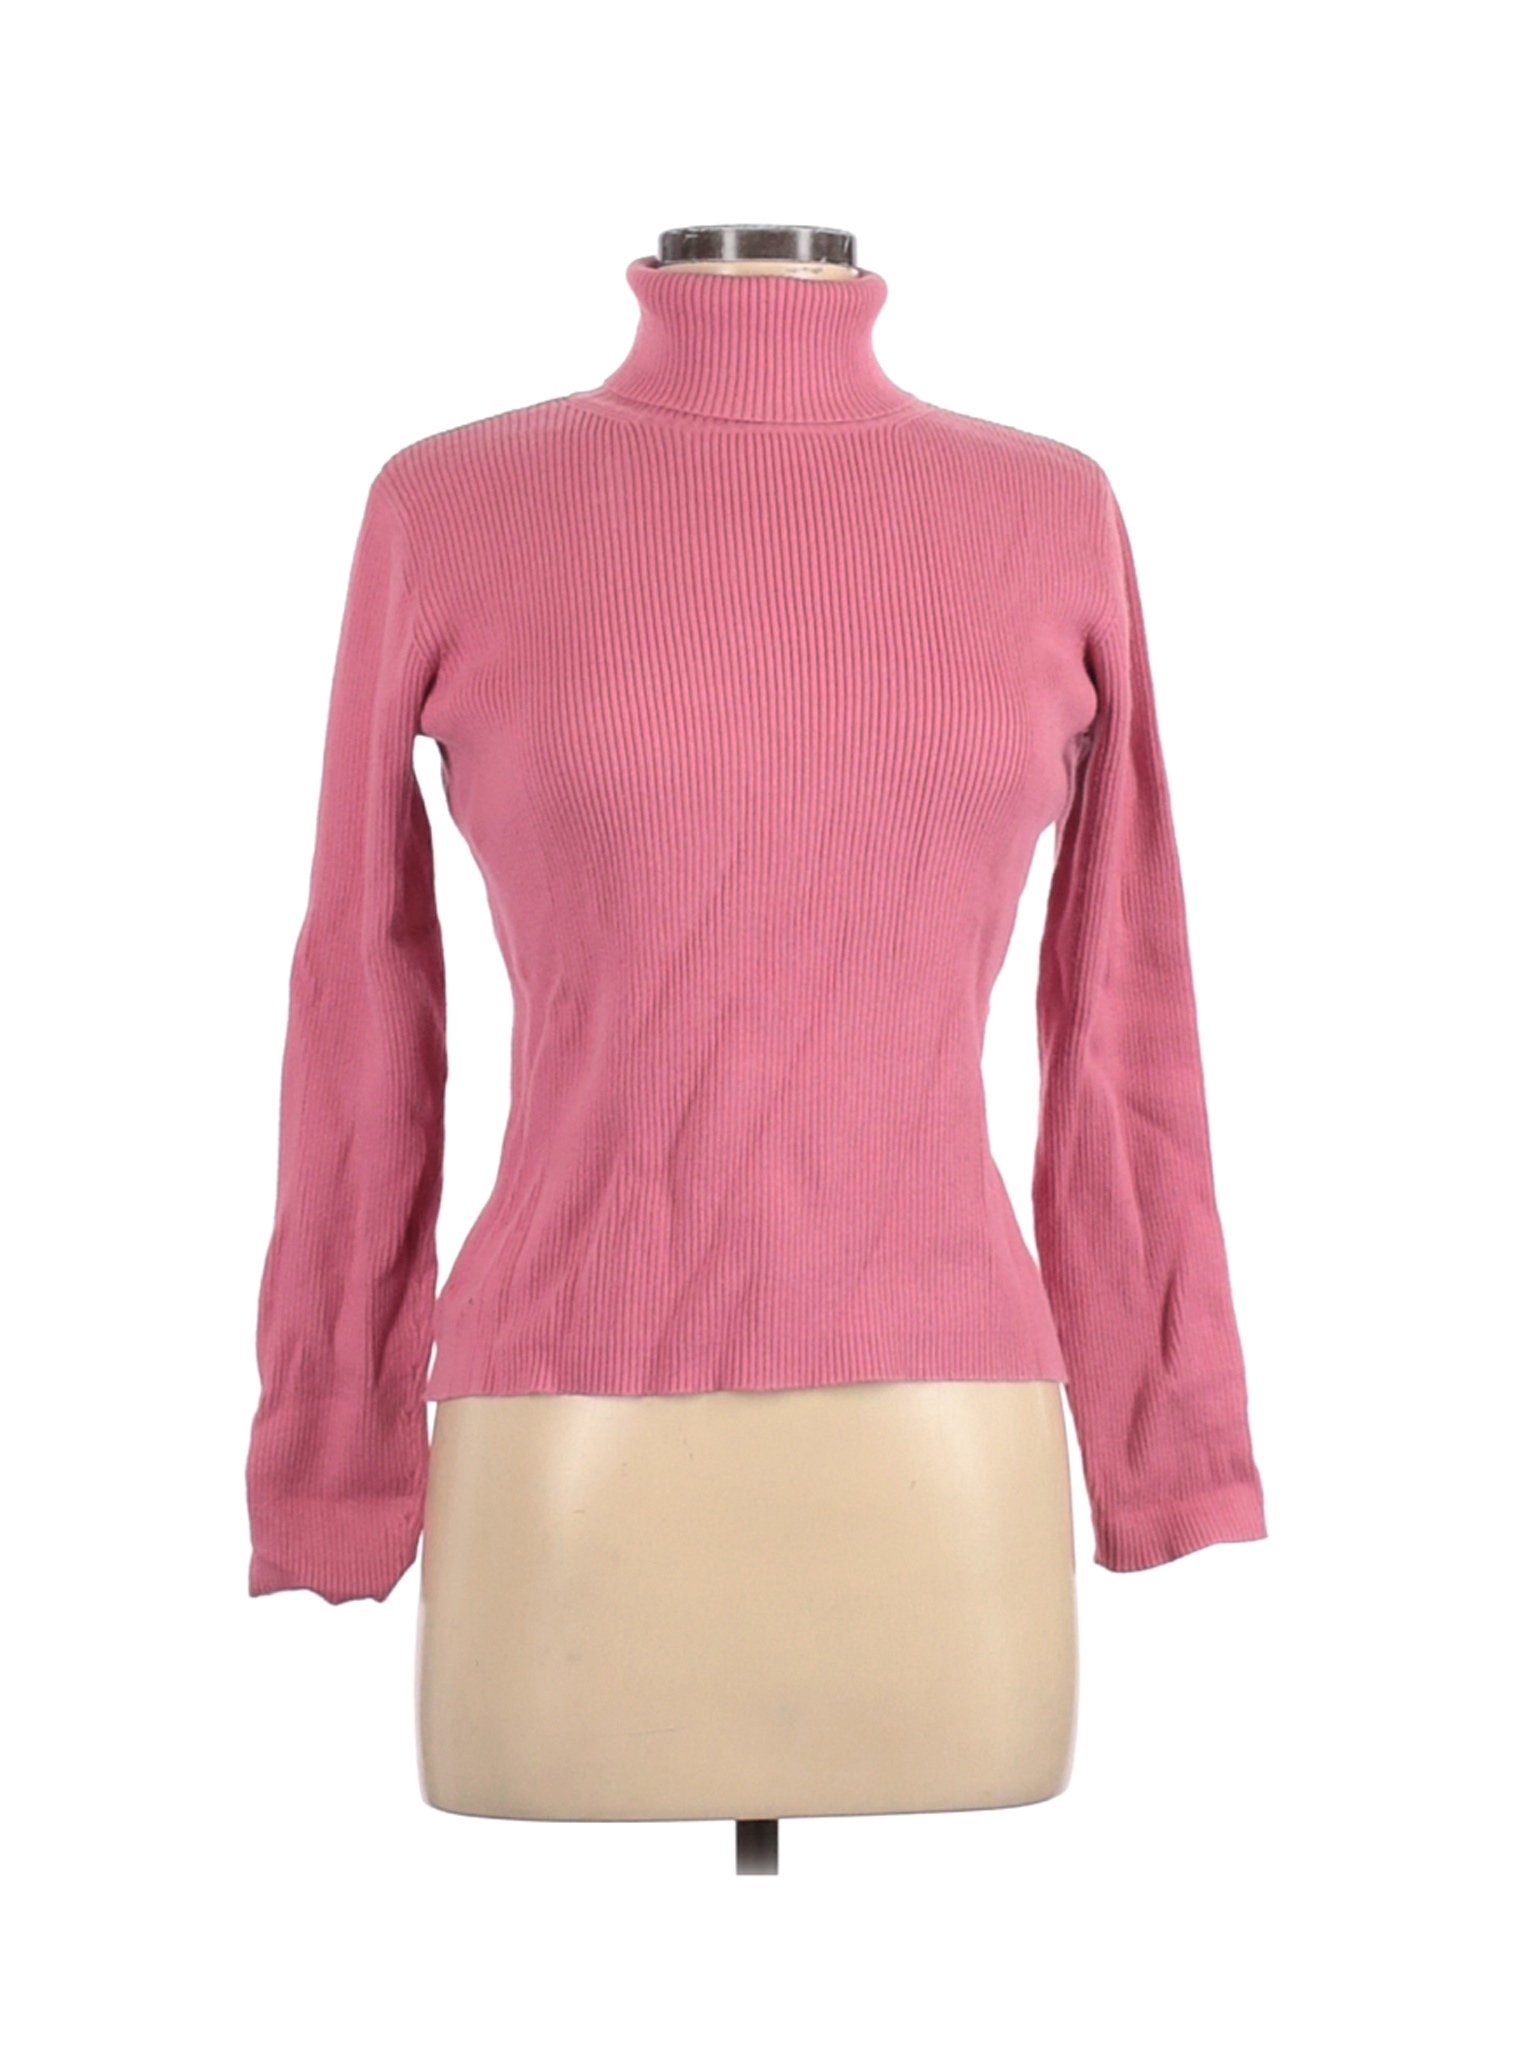 High Sierra Women Pink Turtleneck Sweater M | eBay